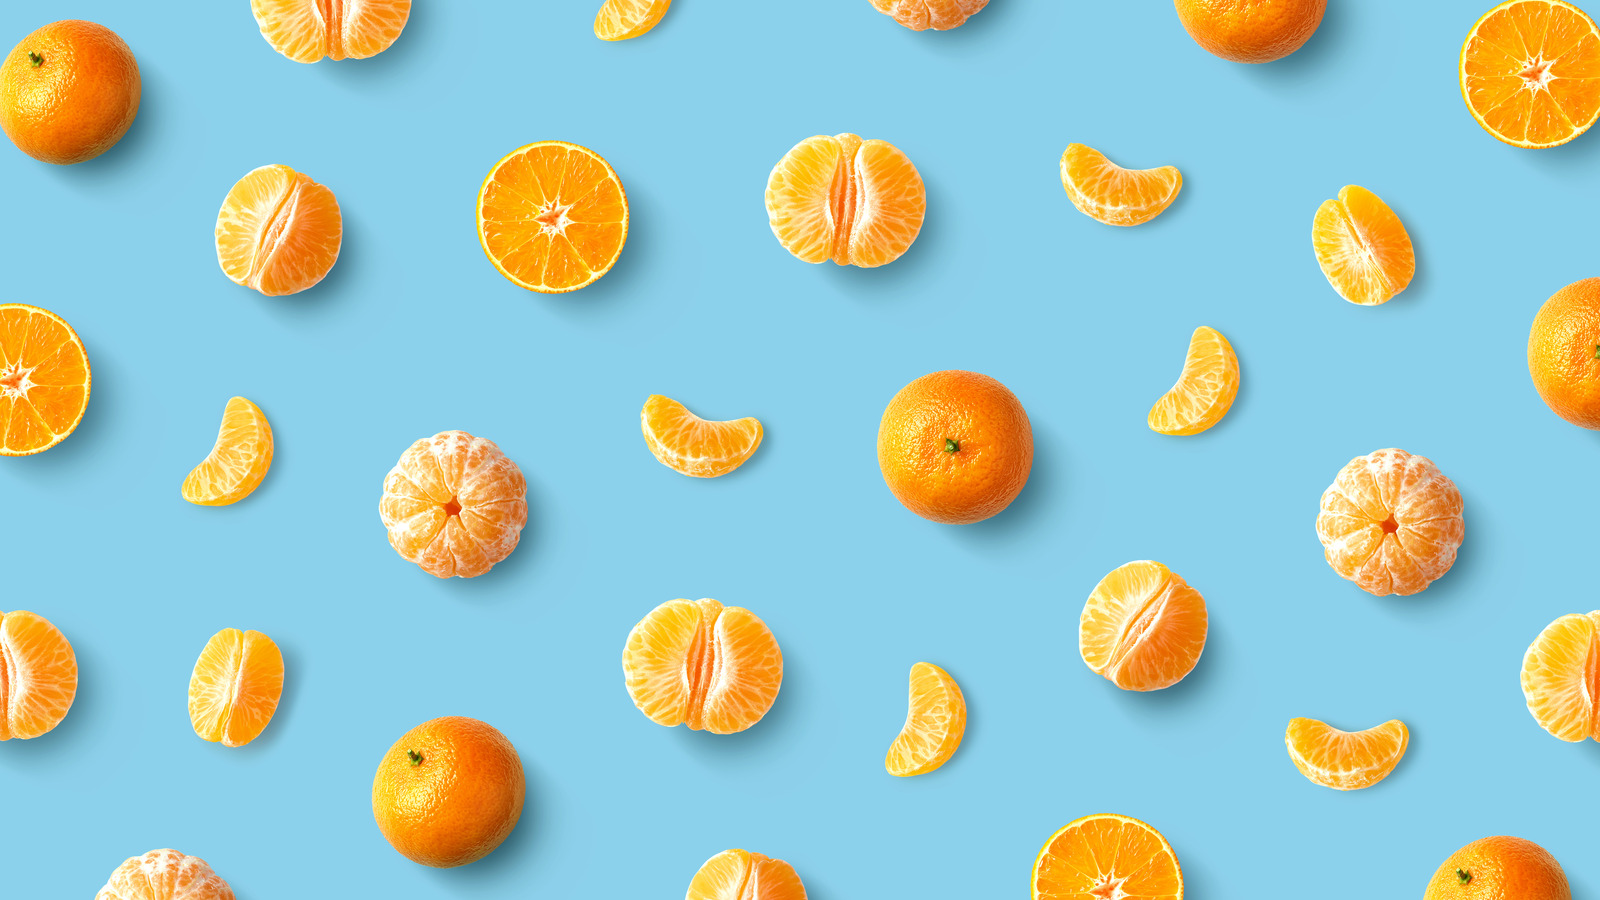 Cam quýt (orange): Cam quýt không chỉ là một trái cây thơm ngon và giàu dinh dưỡng, mà còn là một màu sắc đầy sức sống và năng động. Hãy xem hình ảnh về cam quýt để trải nghiệm một mùa thu tràn đầy hoa quả và thưởng thức sự tươi mới của màu cam quýt!